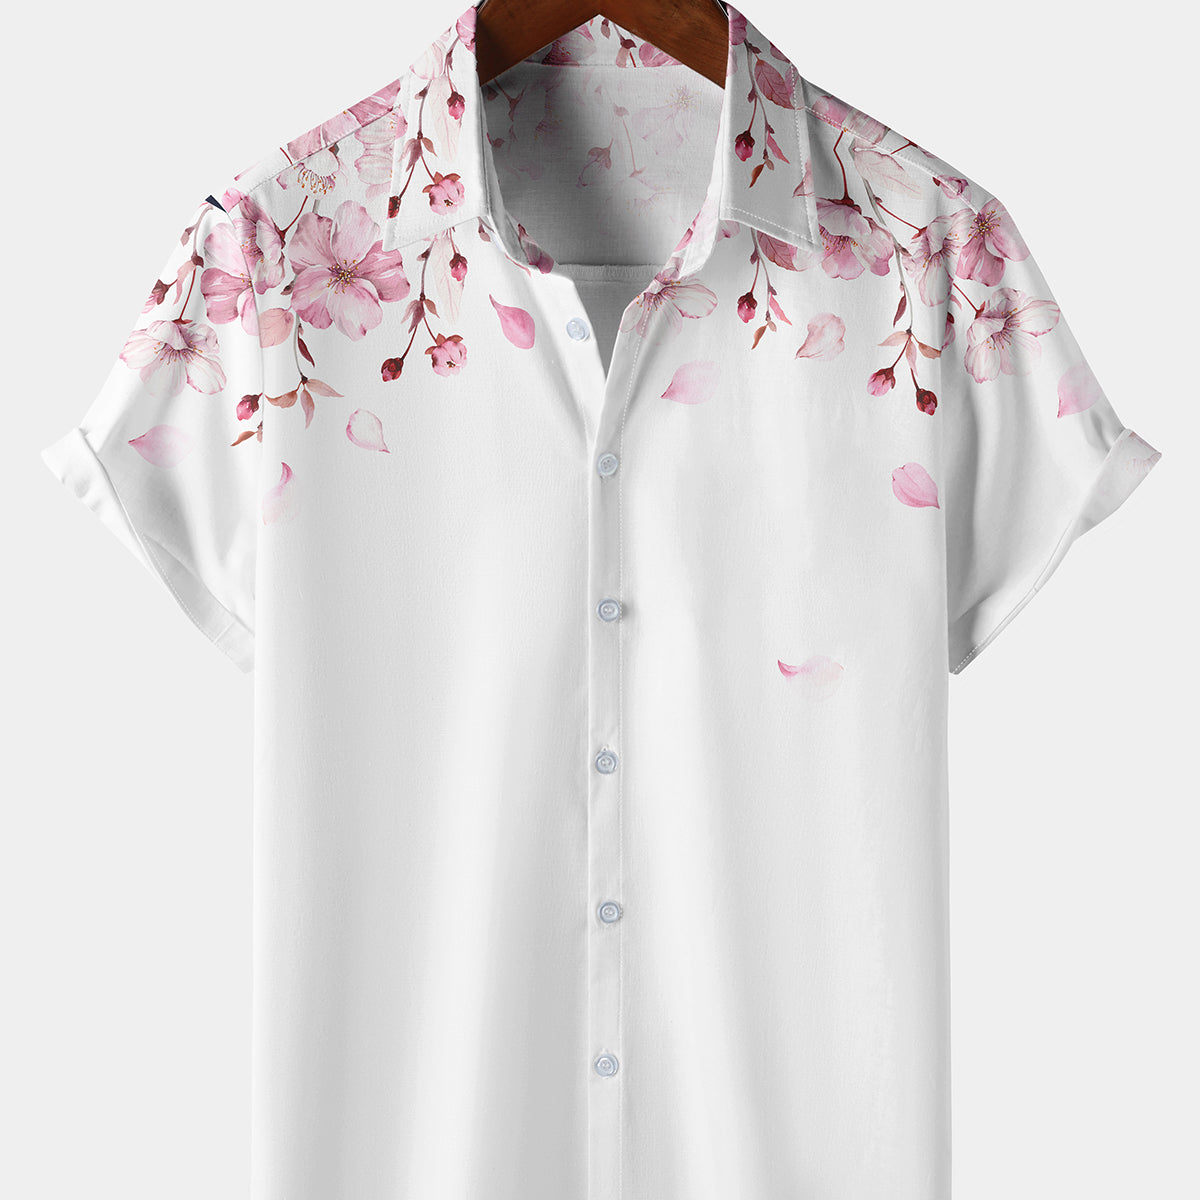 Men's Pink Floral Print Cherry Blossom Short Sleeve Button Up Summer Resort Hawaiian Shirt